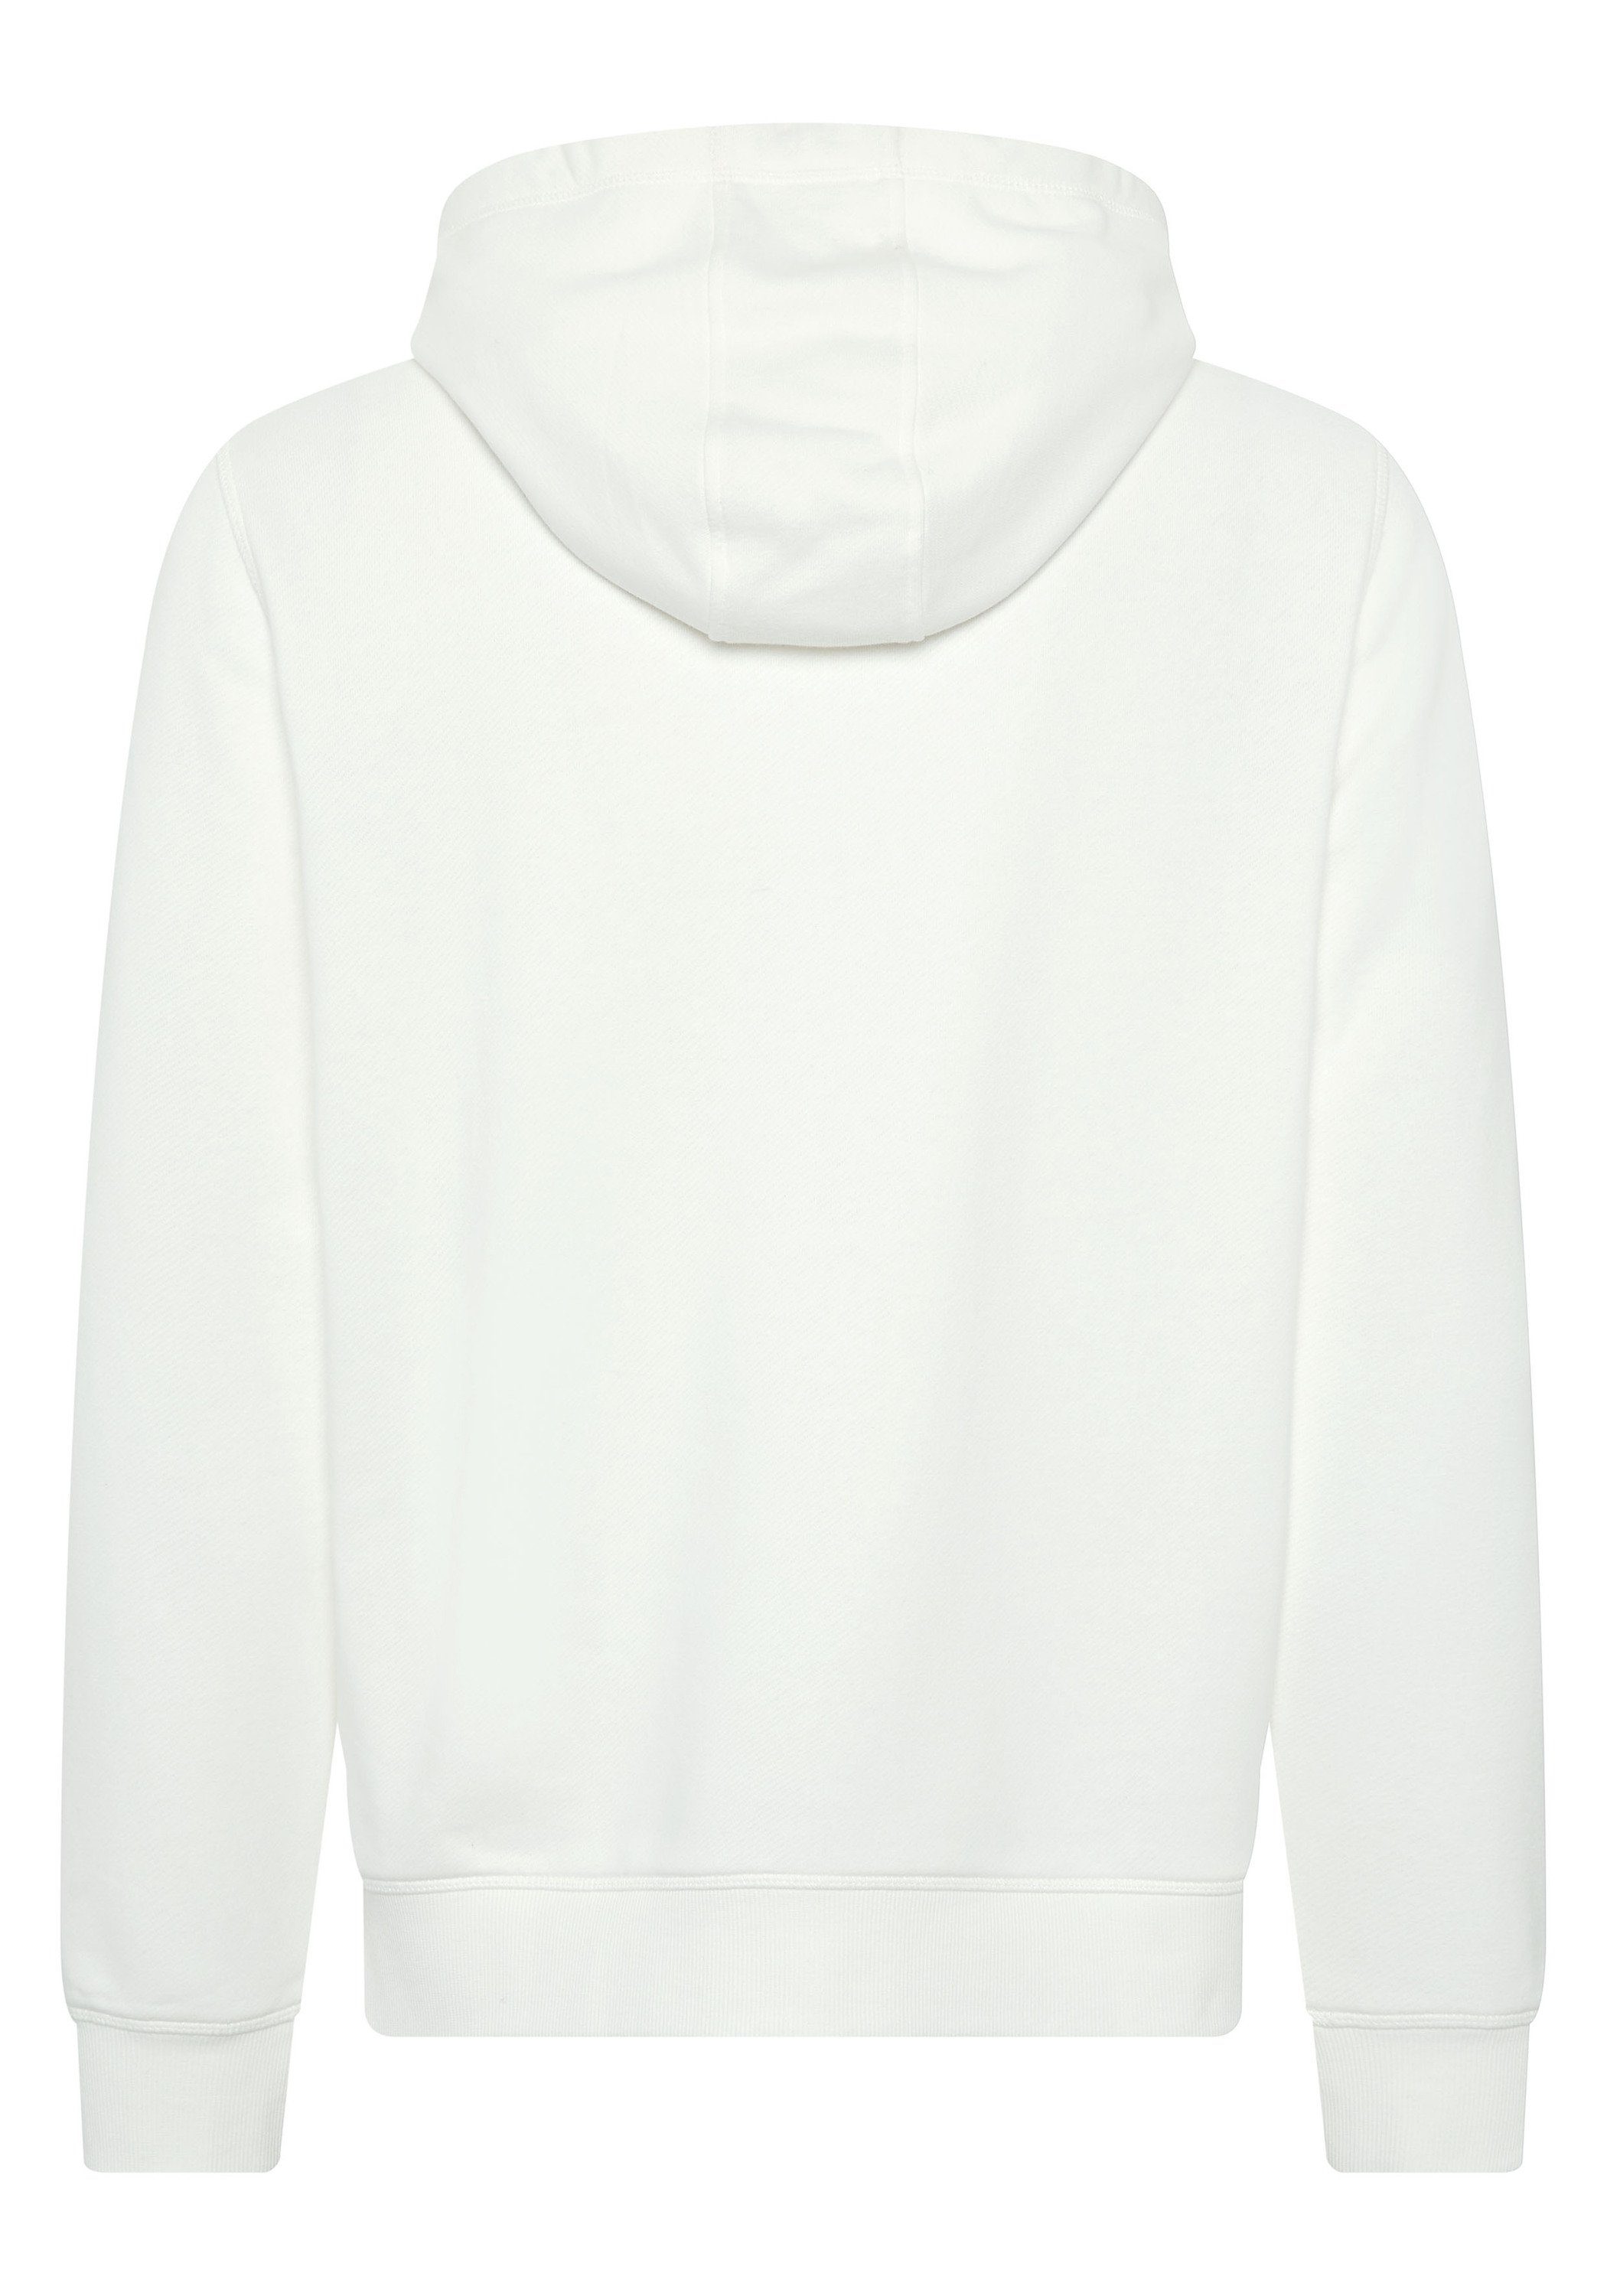 Chiemsee Kapuzensweatshirt Hoodie mit Jumper-Motiv White 1 11-4202 Star